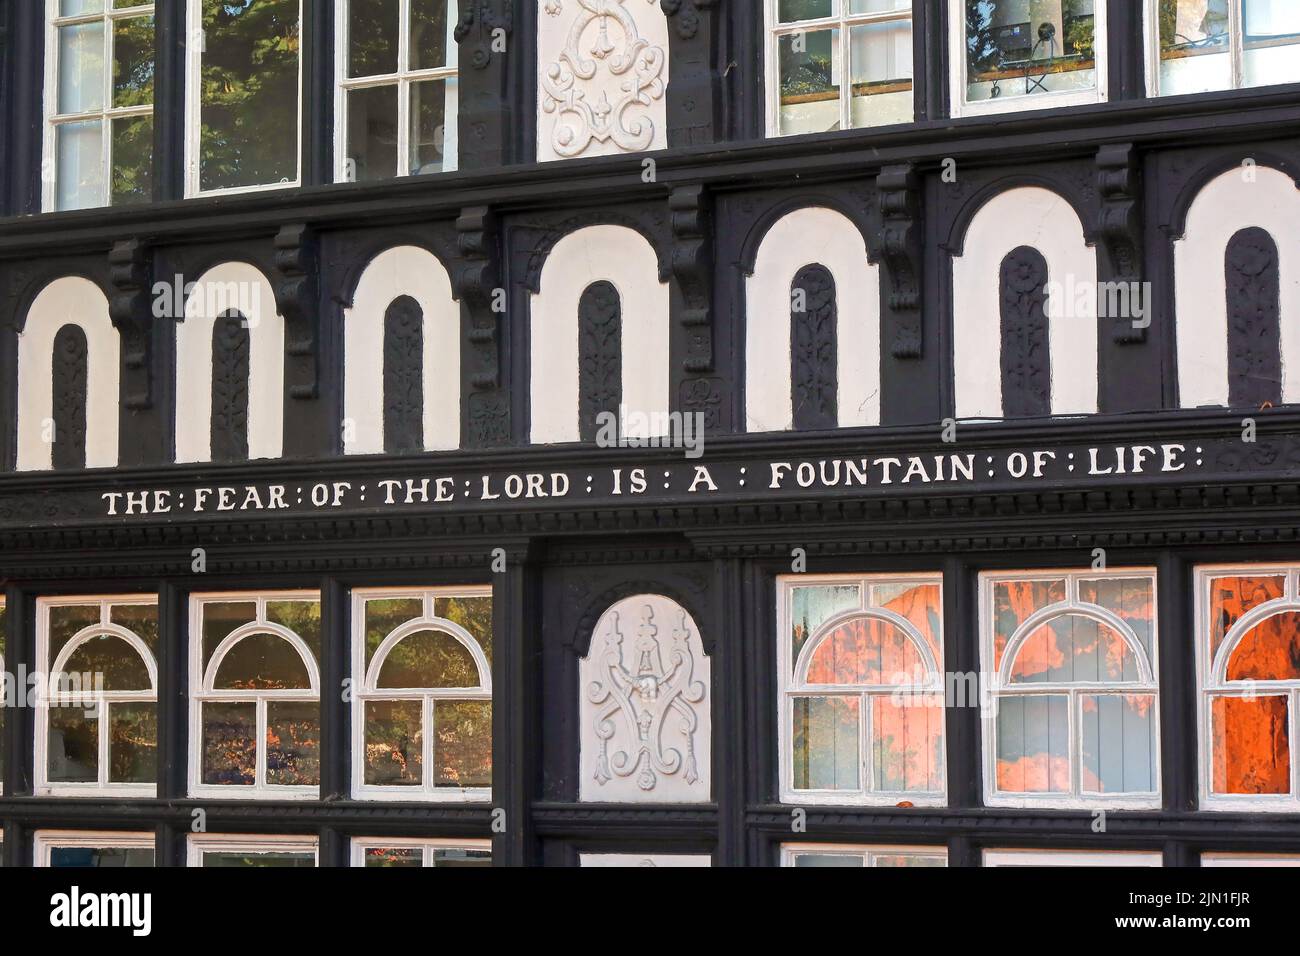 Dentiste dans un bâtiment classé de style Tudor, la peur du seigneur est une fontaine de vie - Bâtiment , 4 Park St, Chester, Cheshire, CH1 1RN, Proverbs14-27 Banque D'Images